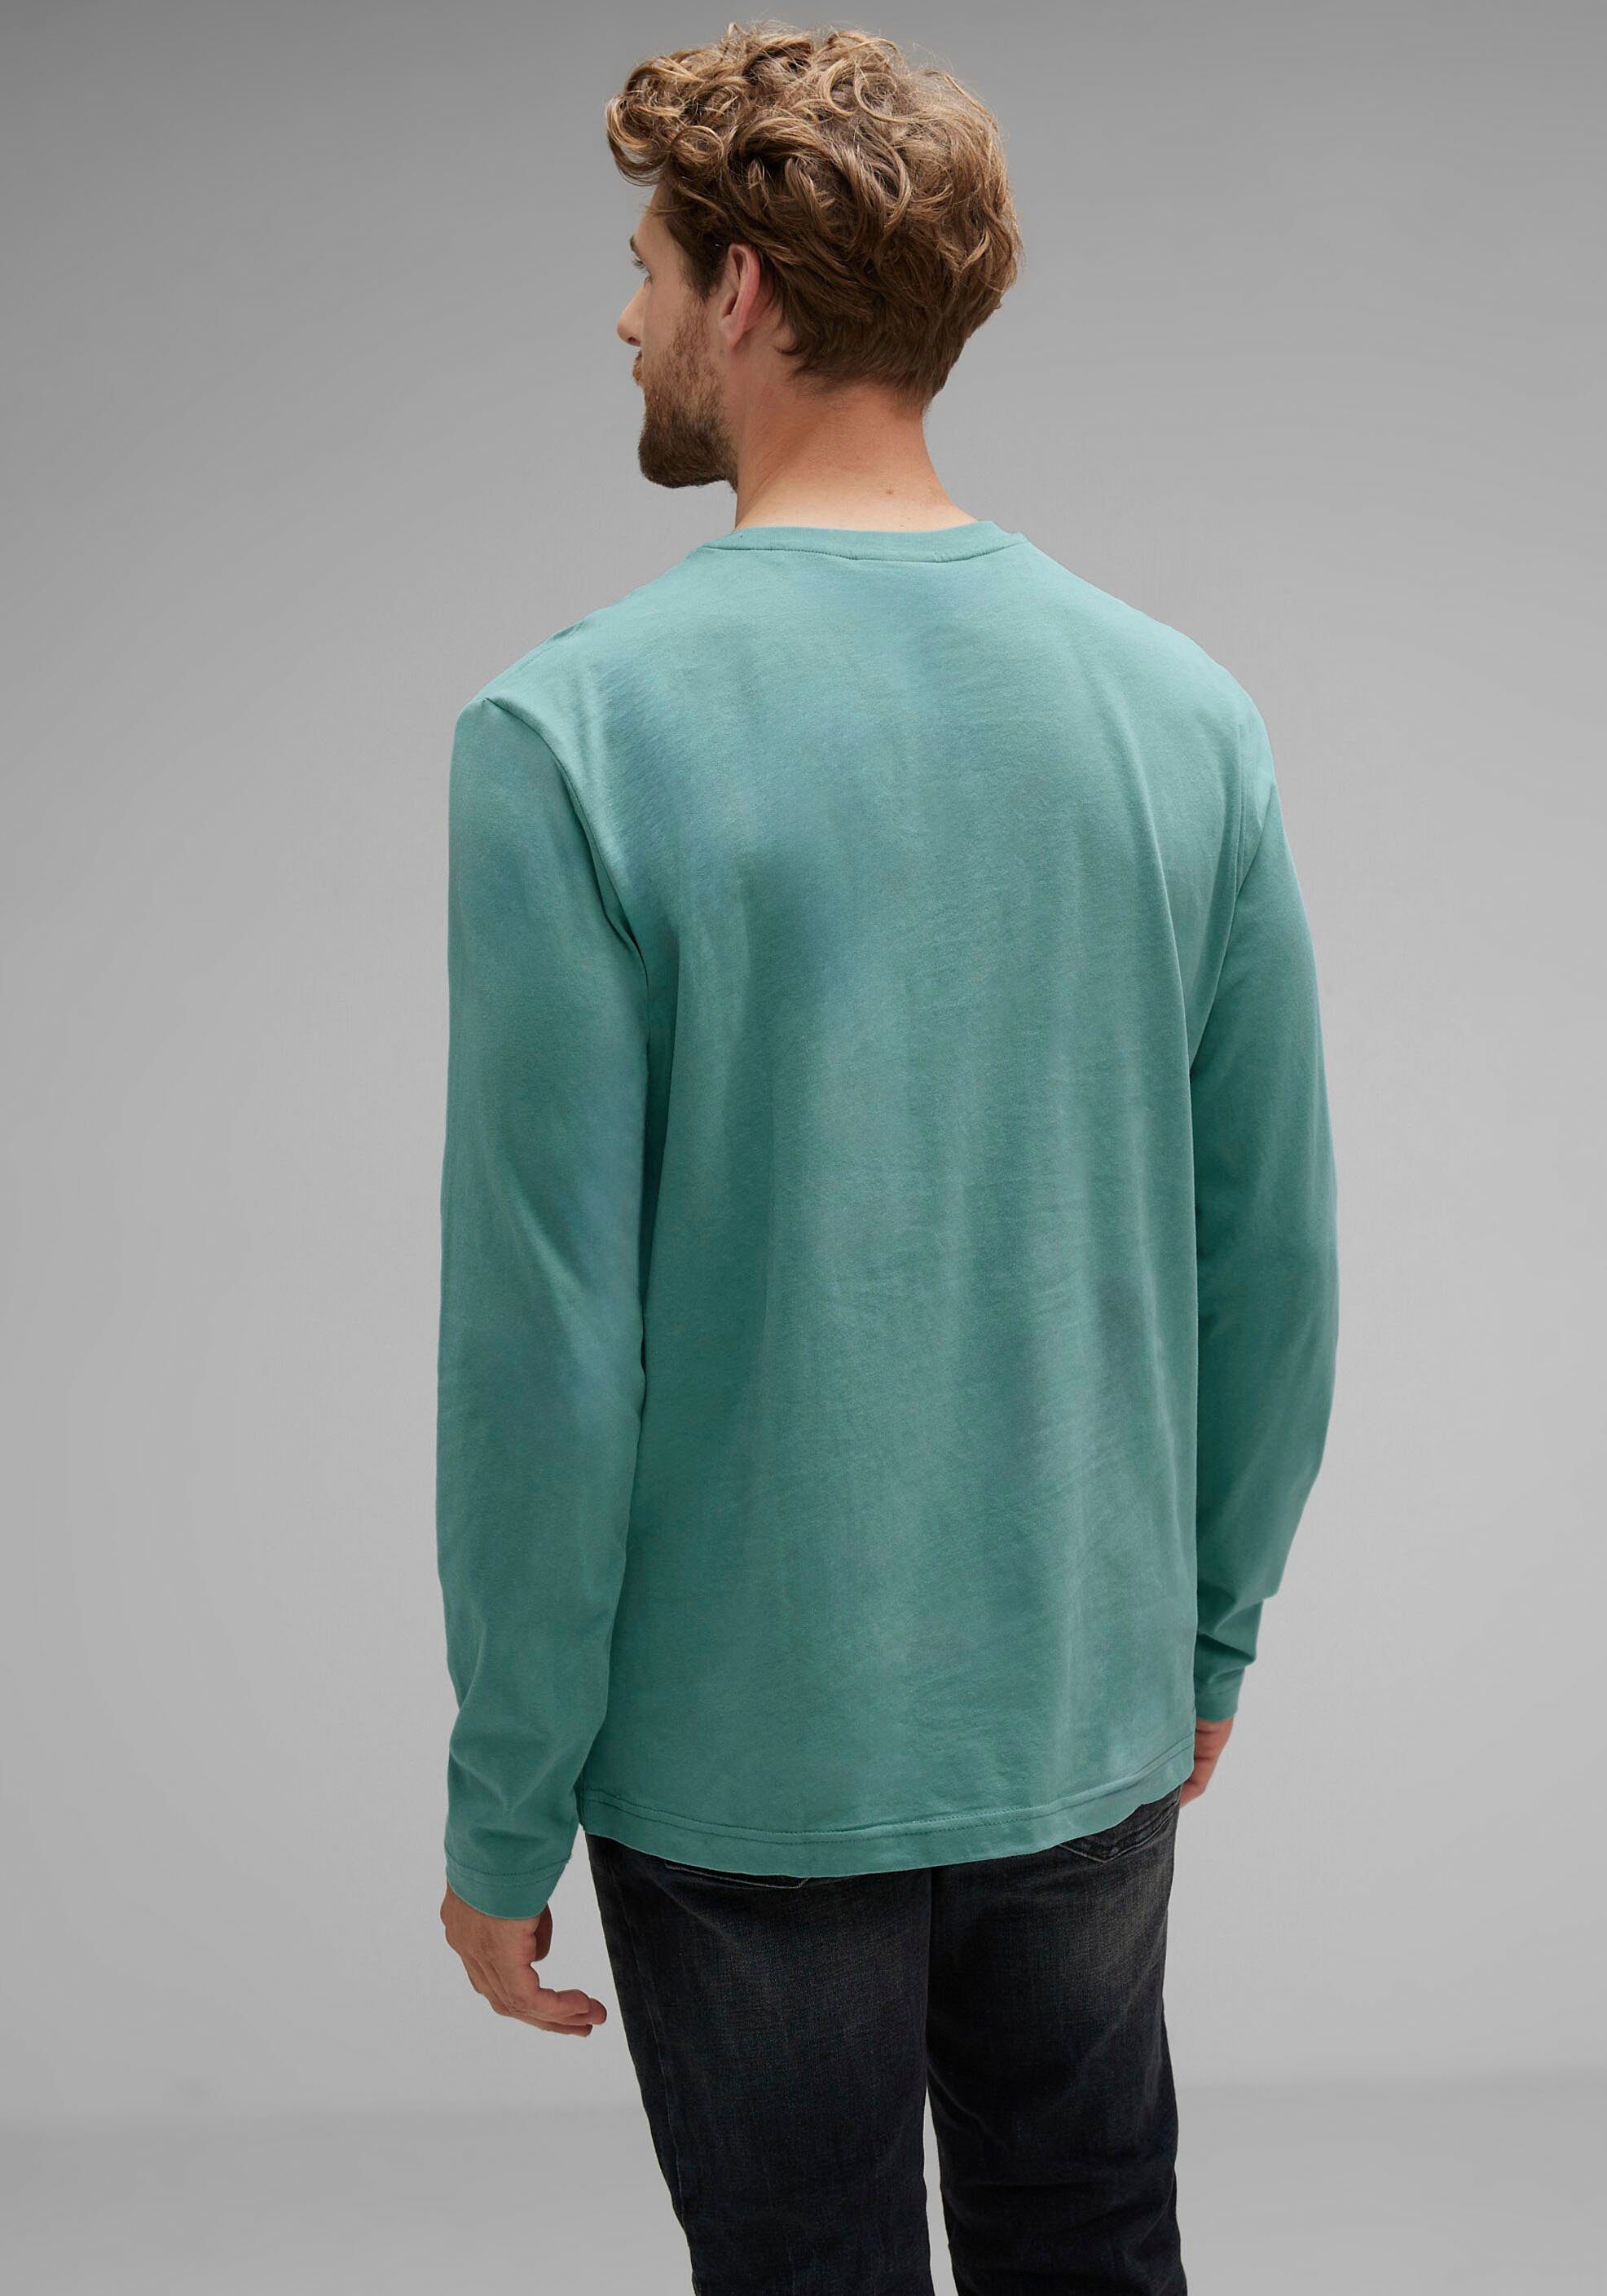 ONE turquoise Brustprint Langarmshirt mit MEN STREET green